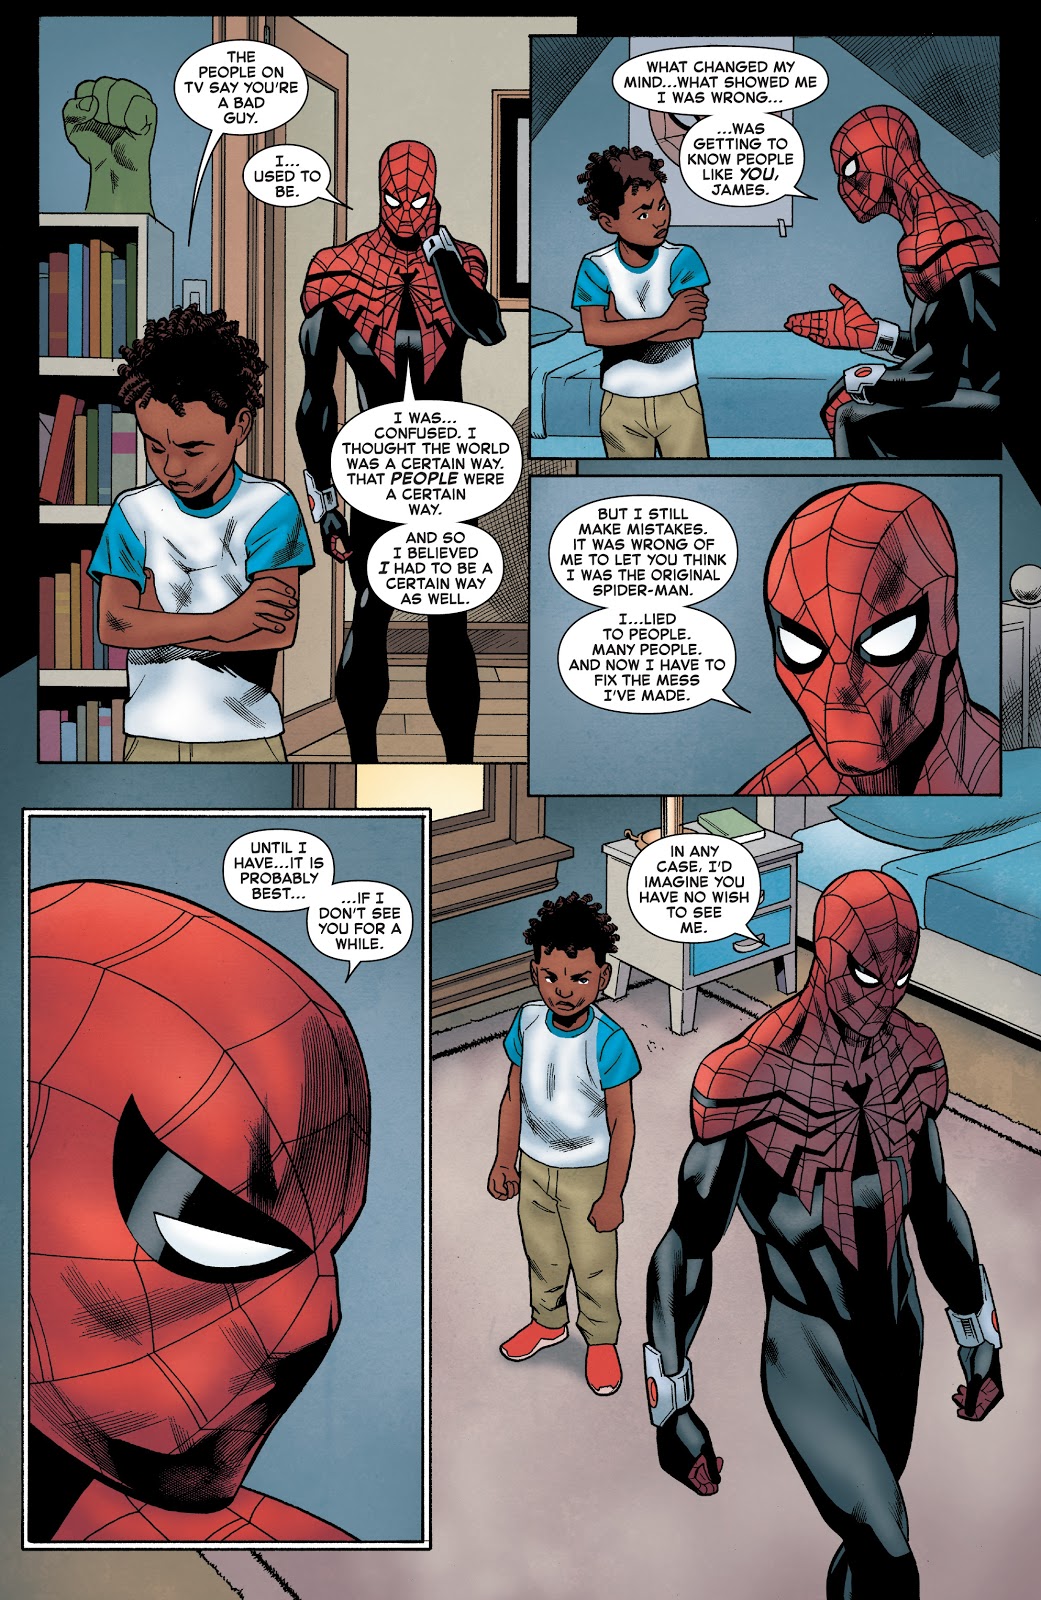 Superior Spider-Man Bonds With A Kid